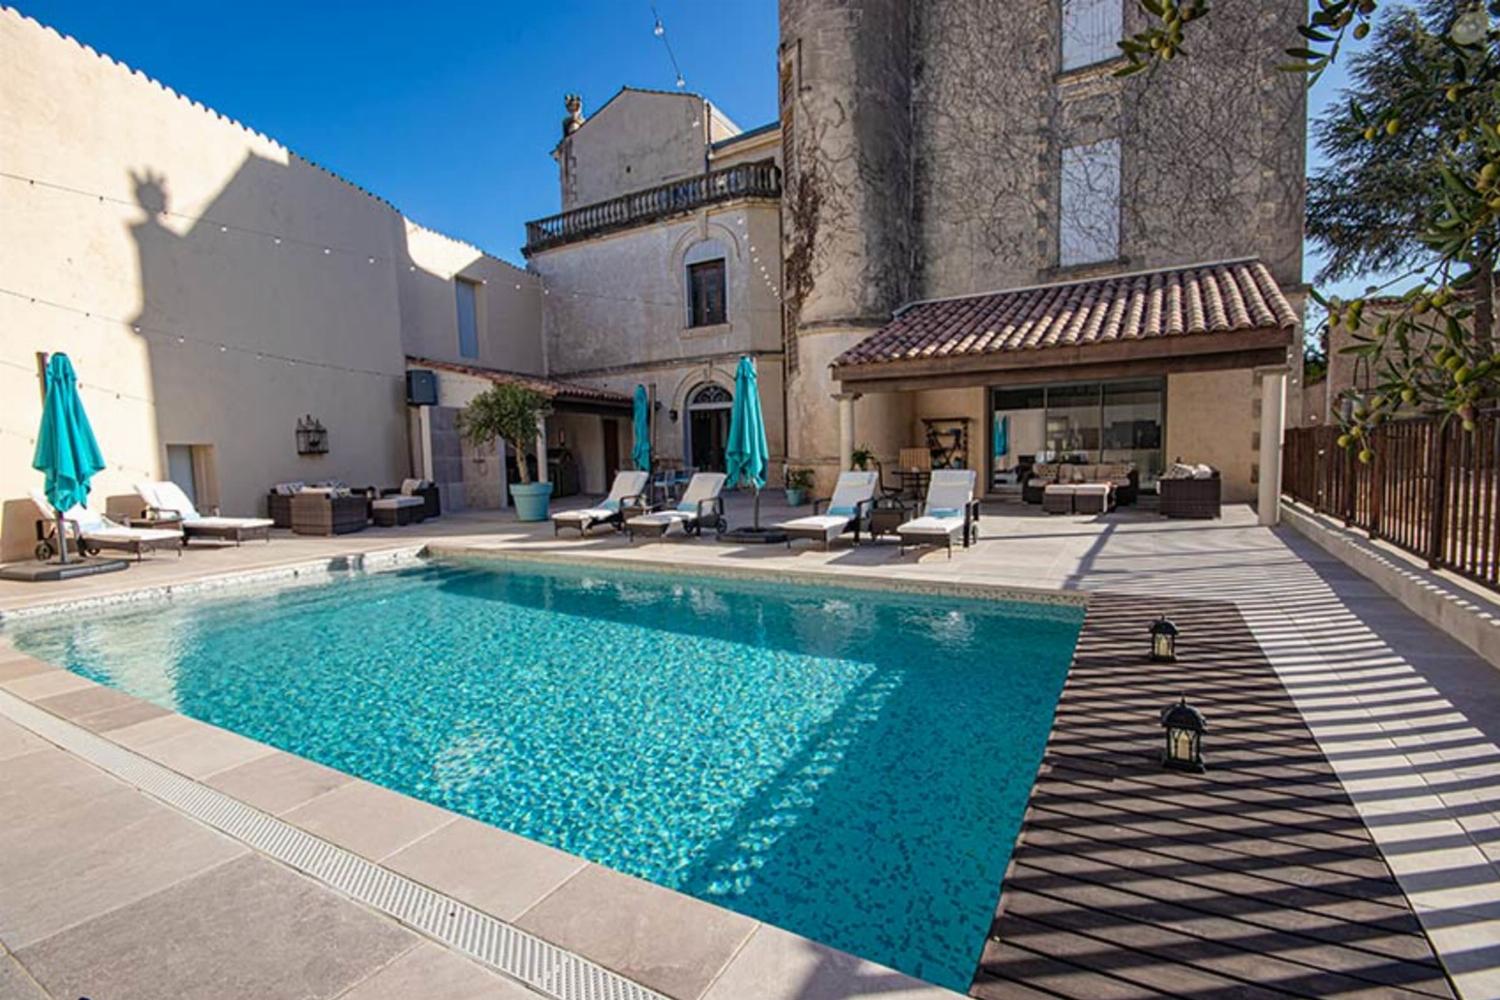 Château de vacances dans le sud de la France avec piscine privée chauffée